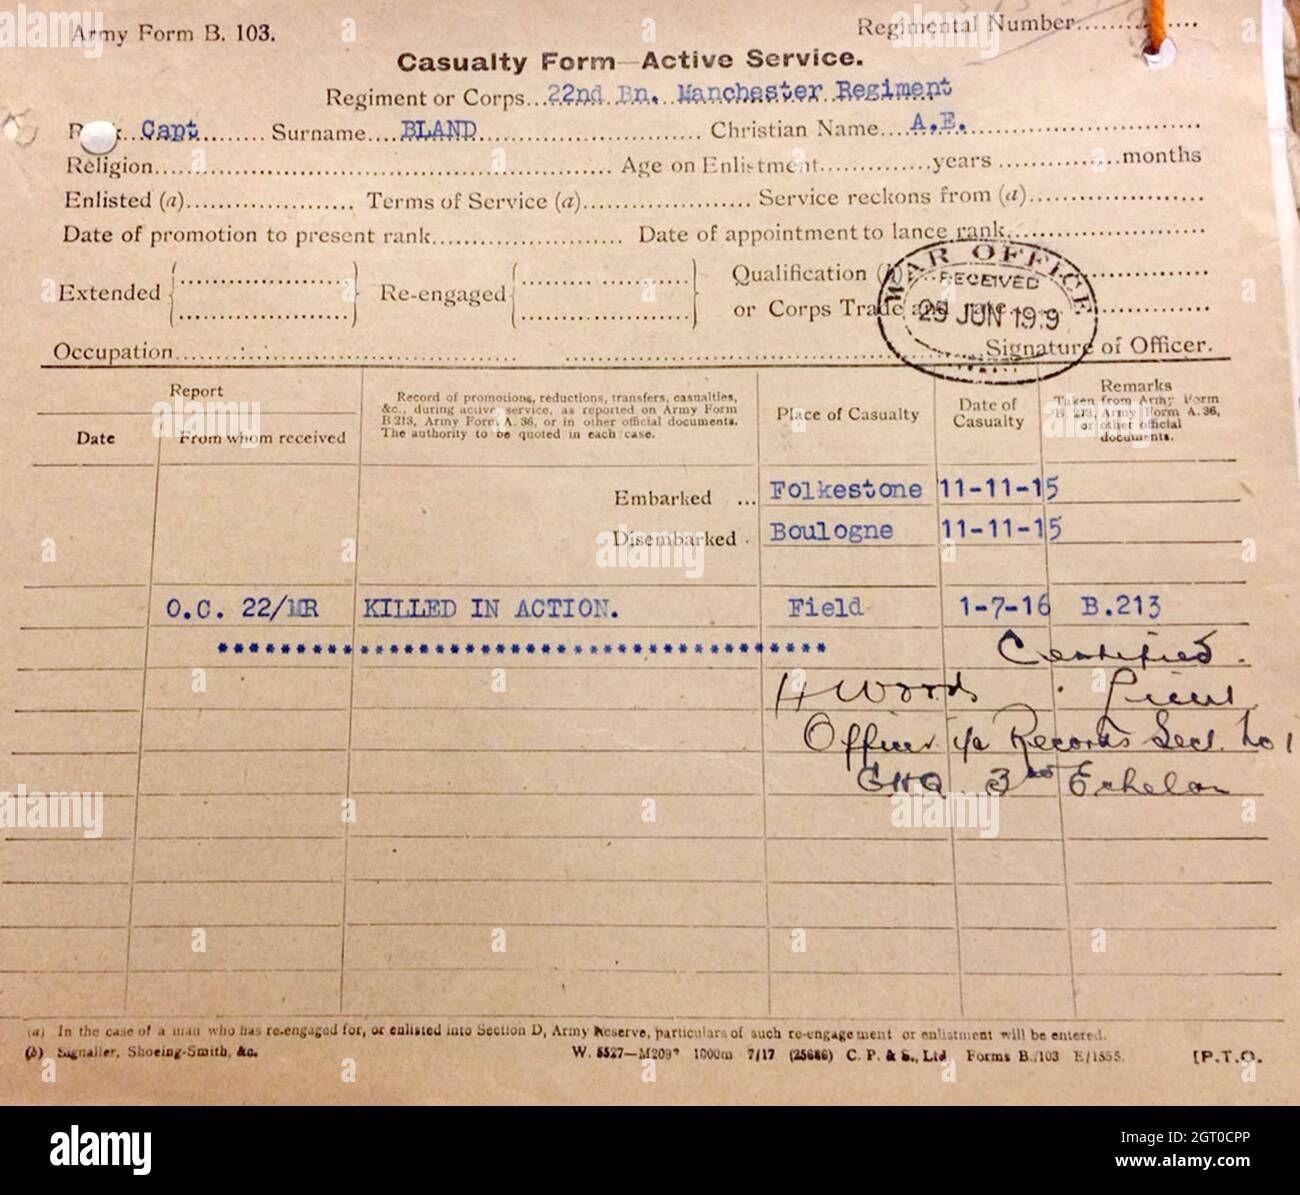 Un telegramma dell'Ufficio di guerra della prima guerra mondiale, che informa i parenti che il capitano Bland è stato ucciso in azione il primo giorno dell'offensiva della Somme. Foto Stock